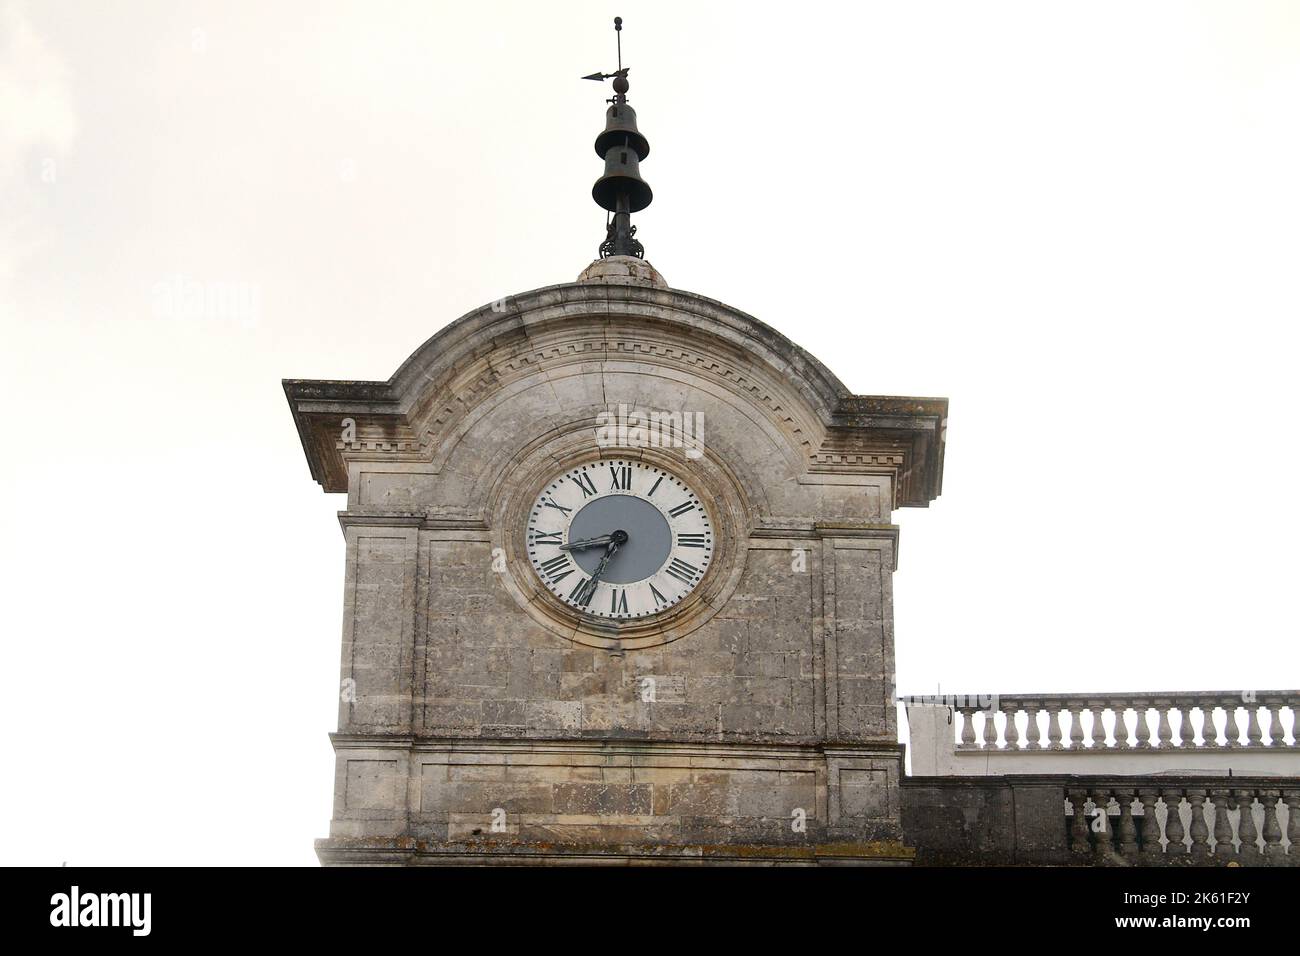 Cisternino, Puglia, Italy. The clock tower (b. 1850) in Piazza Vittorio Emanuele III (Piazza Dell'Orologio). Stock Photo